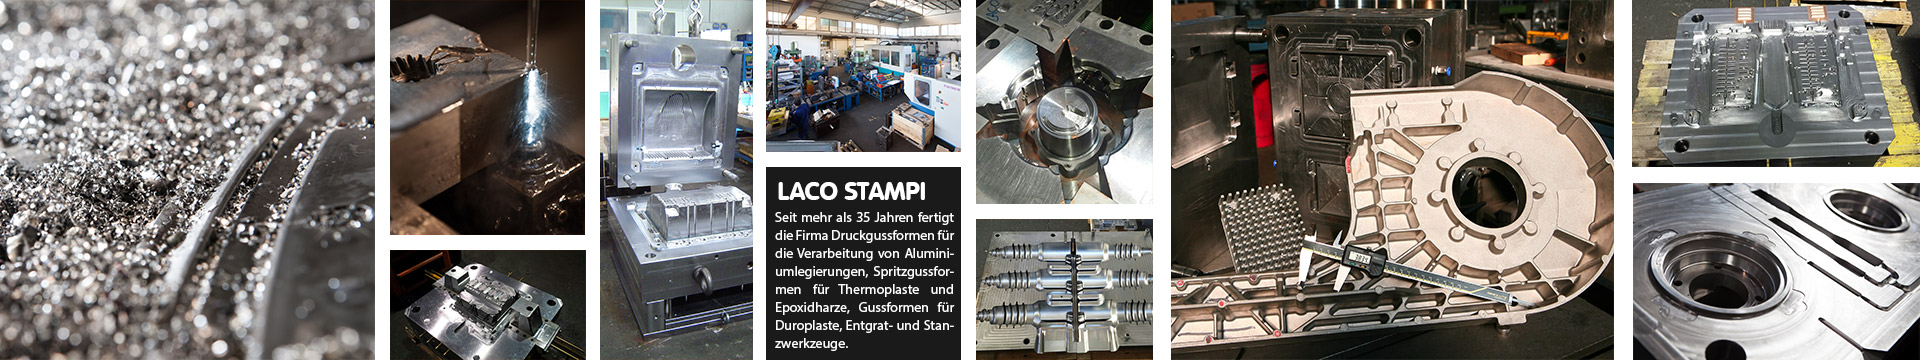 Laco Stampi | Druckgussformen, gussformen für epoxidharze und thermoplaste | Bergamo